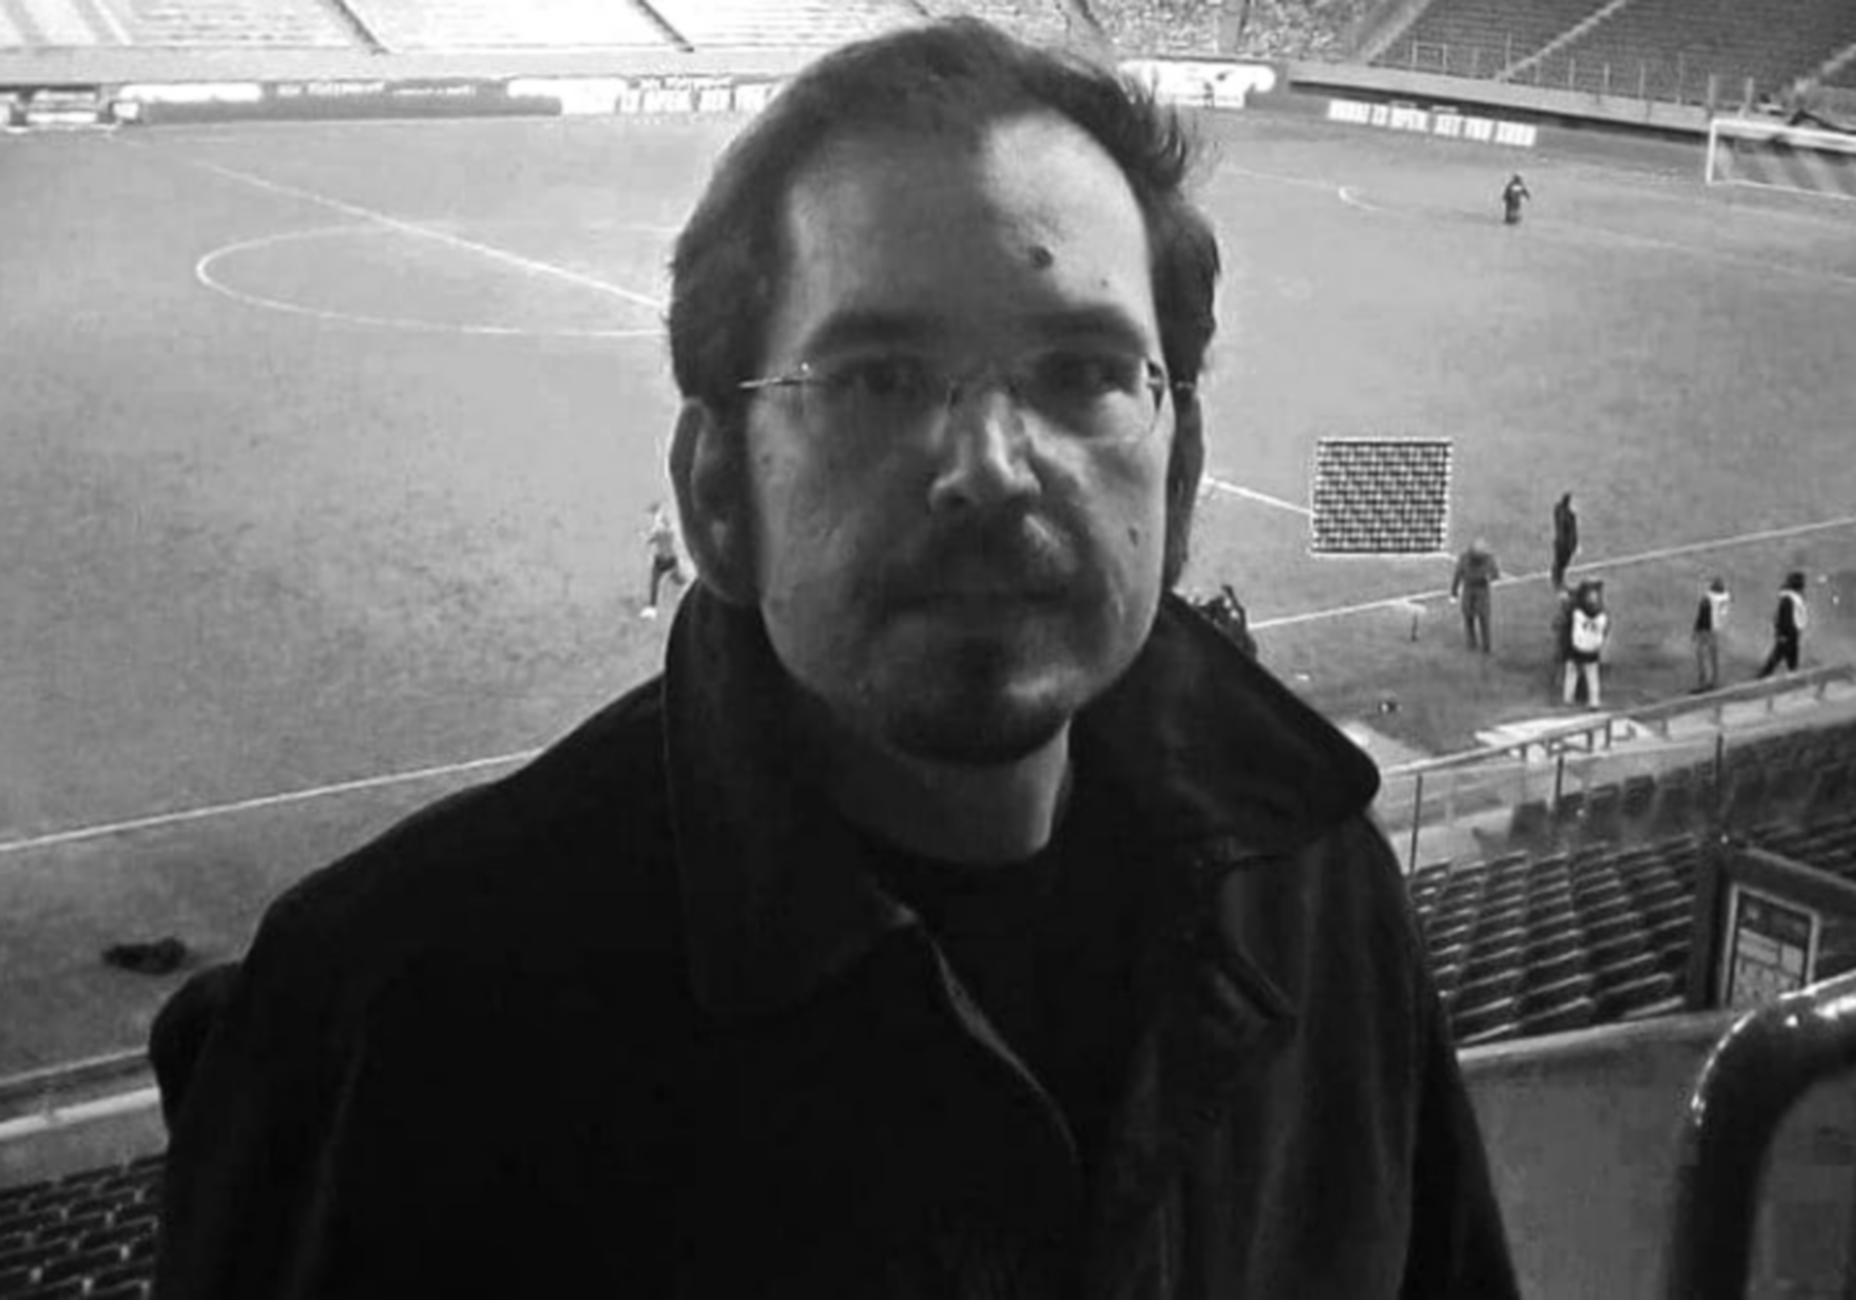 Πέθανε ο δημοσιογράφος Παναγιώτης Γκαραγκάνης